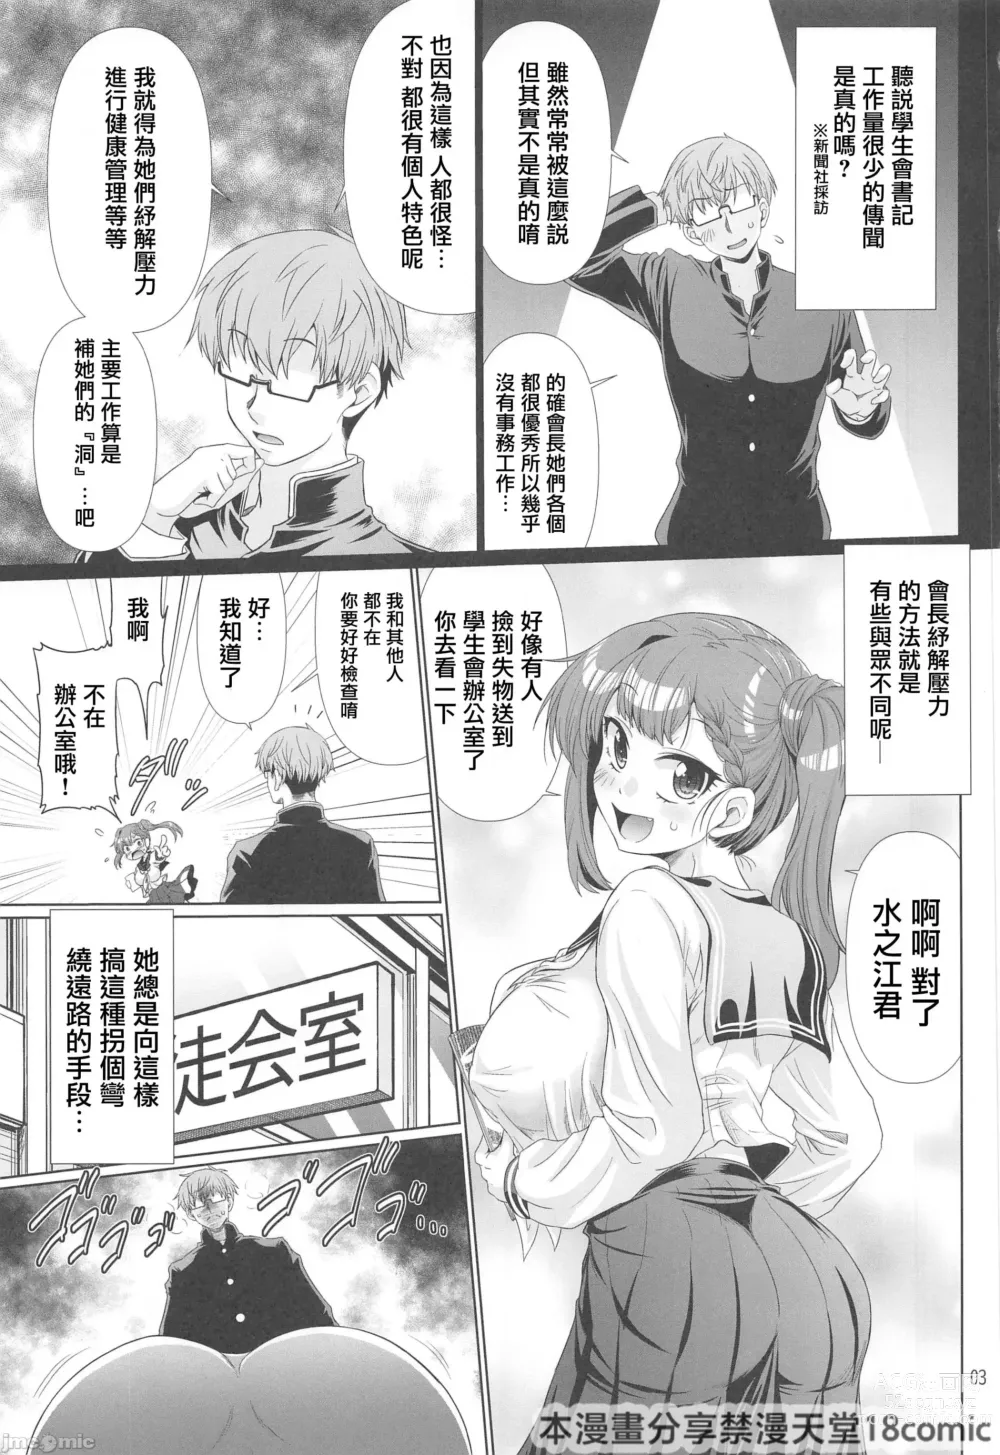 Page 3 of doujinshi Seitokai no Ana